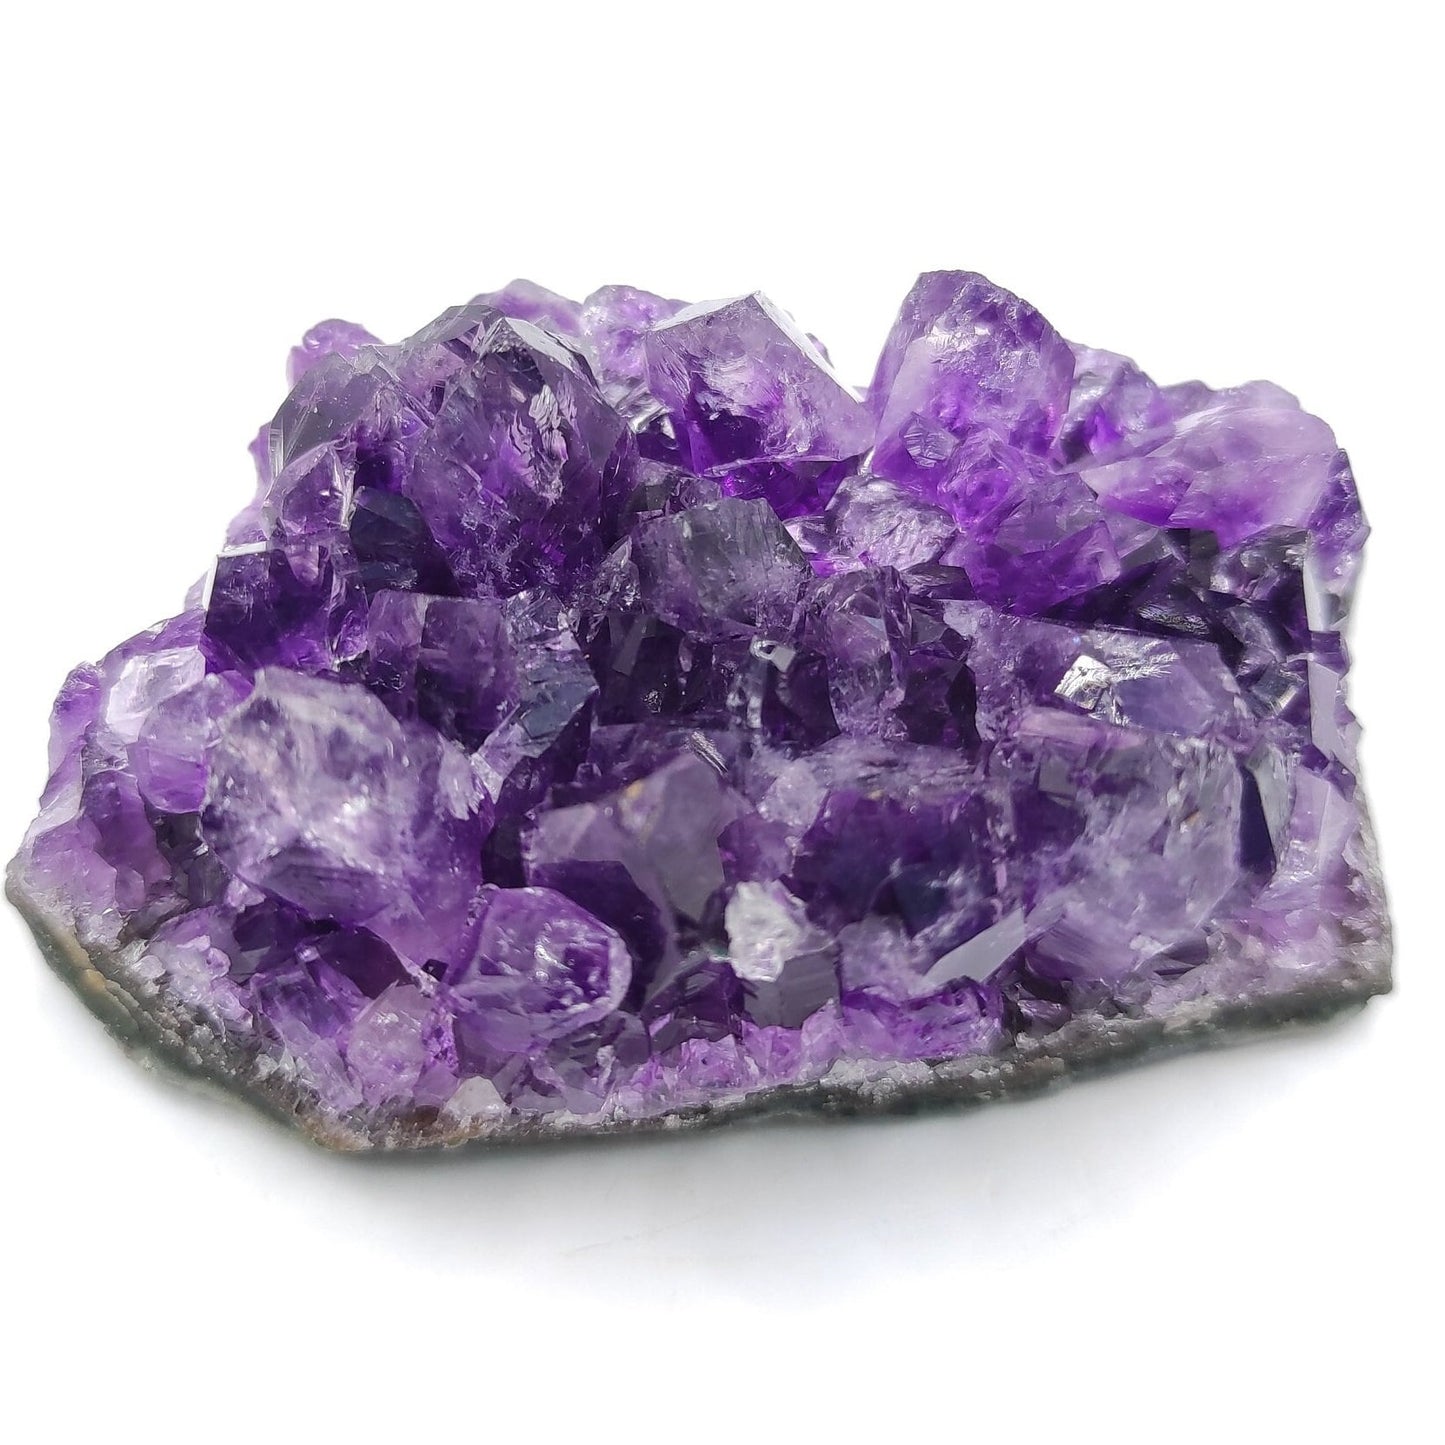 71g Amethyst Cluster from Uruguay - Small Amethyst Crystal - Purple Amethyst Mineral - Natural Amethyst Specimen from Artigas, Uruguay